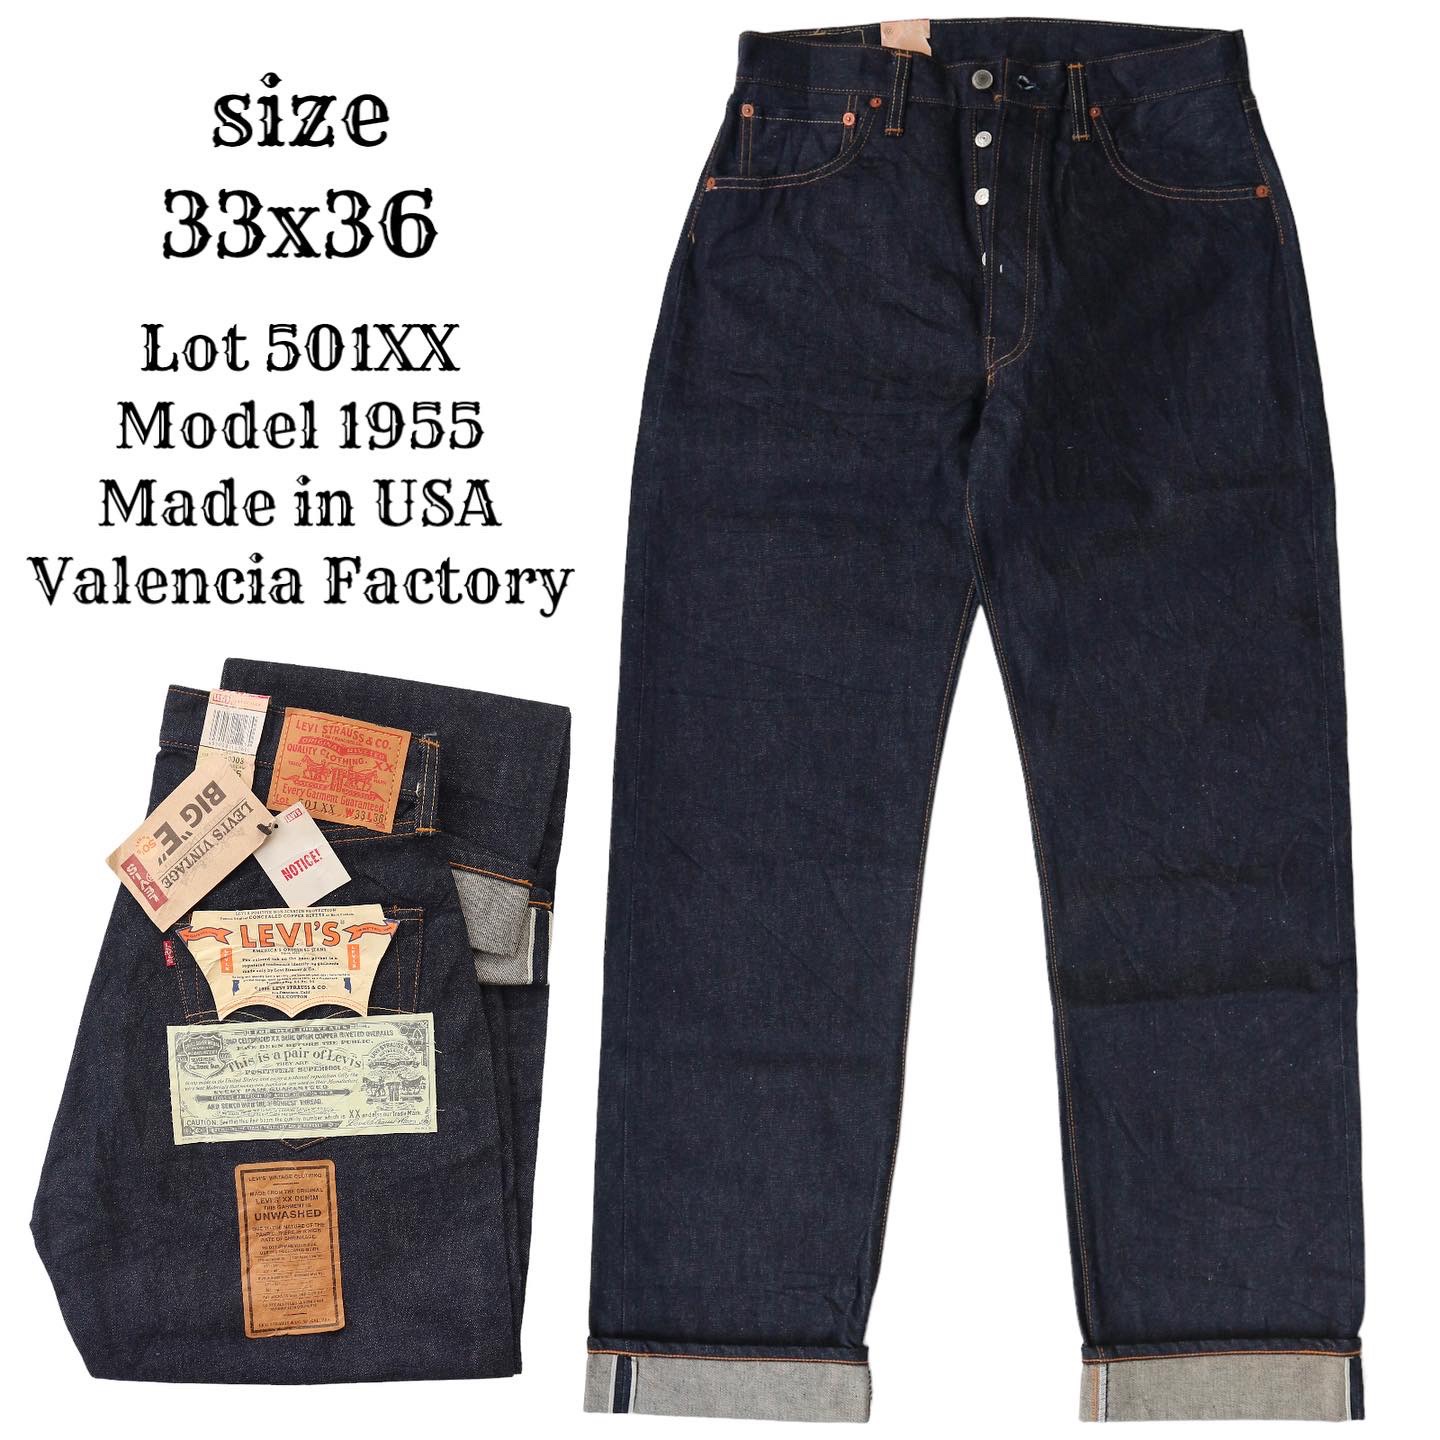 LEVI’S VINTAGE CLOTHING Lot 501XX 1955 Selvedge Denim Jeans Size 33